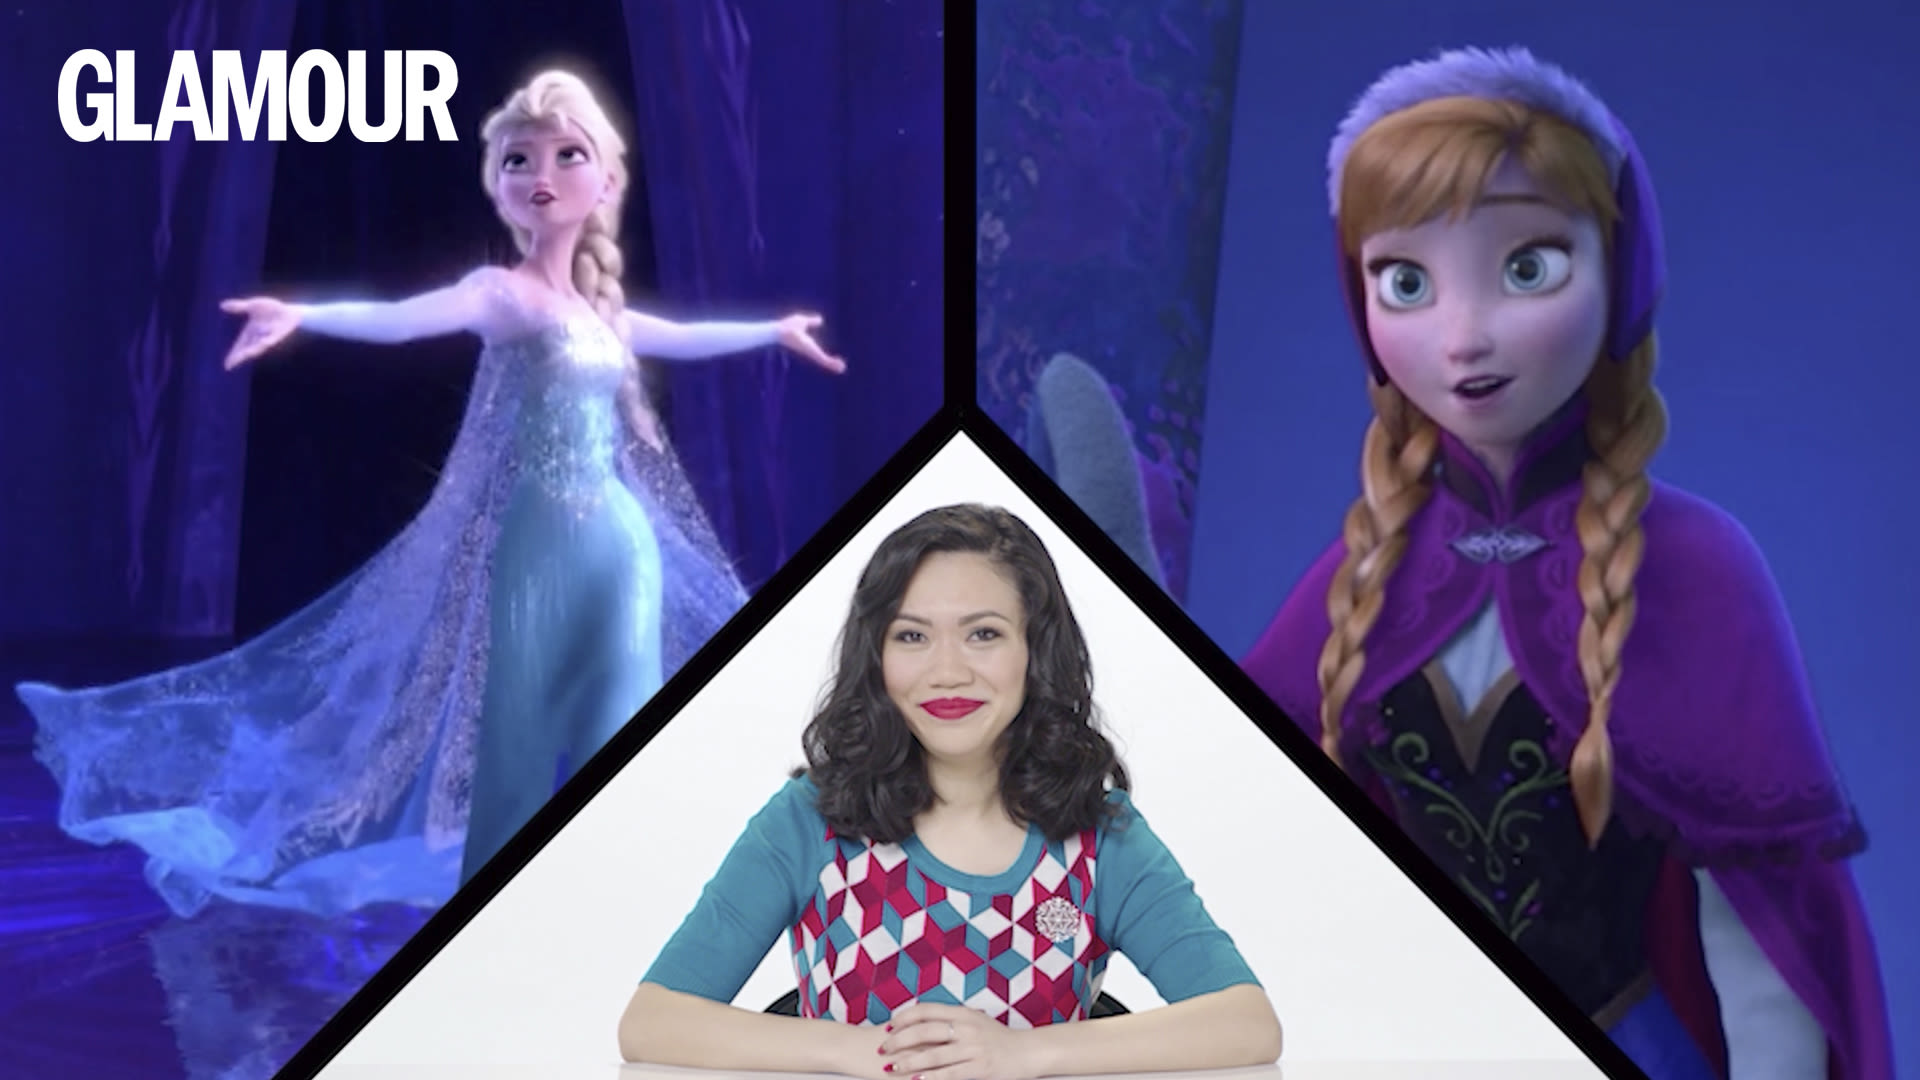 Watch Una experta en moda analiza los trajes de Elsa y Anna de 'Frozen'